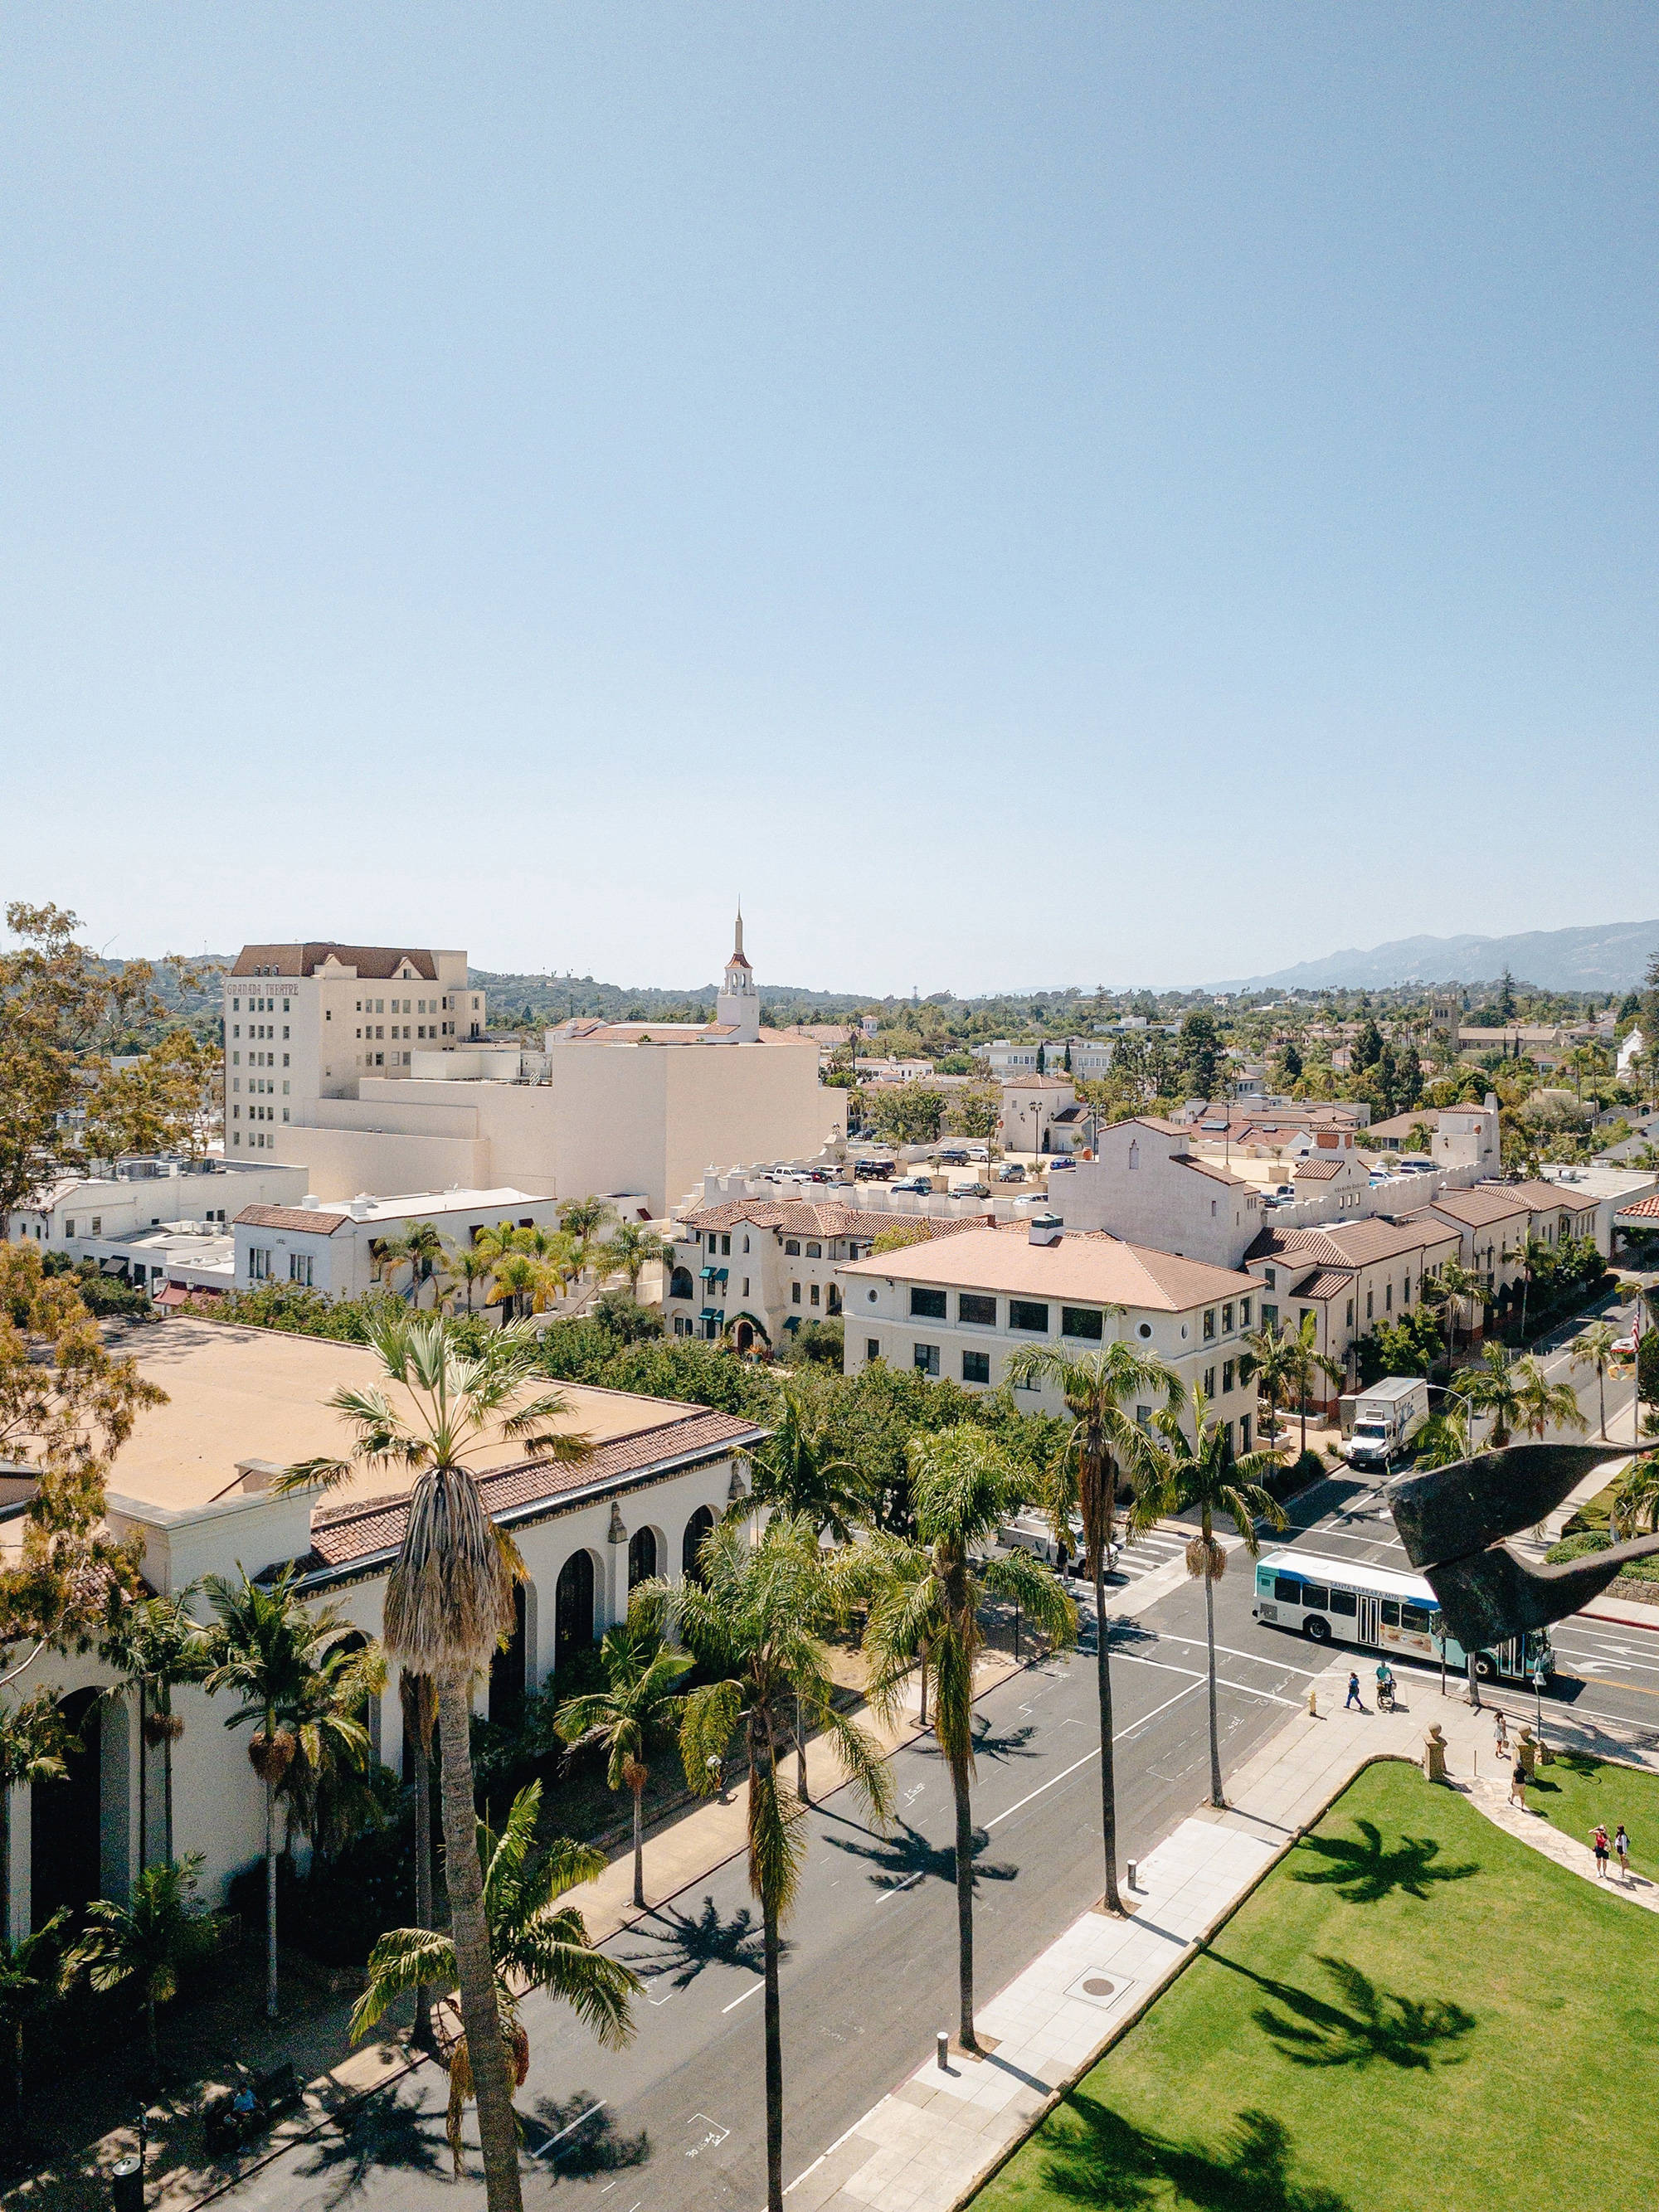 Santa Barbara Califfornia View Of Town